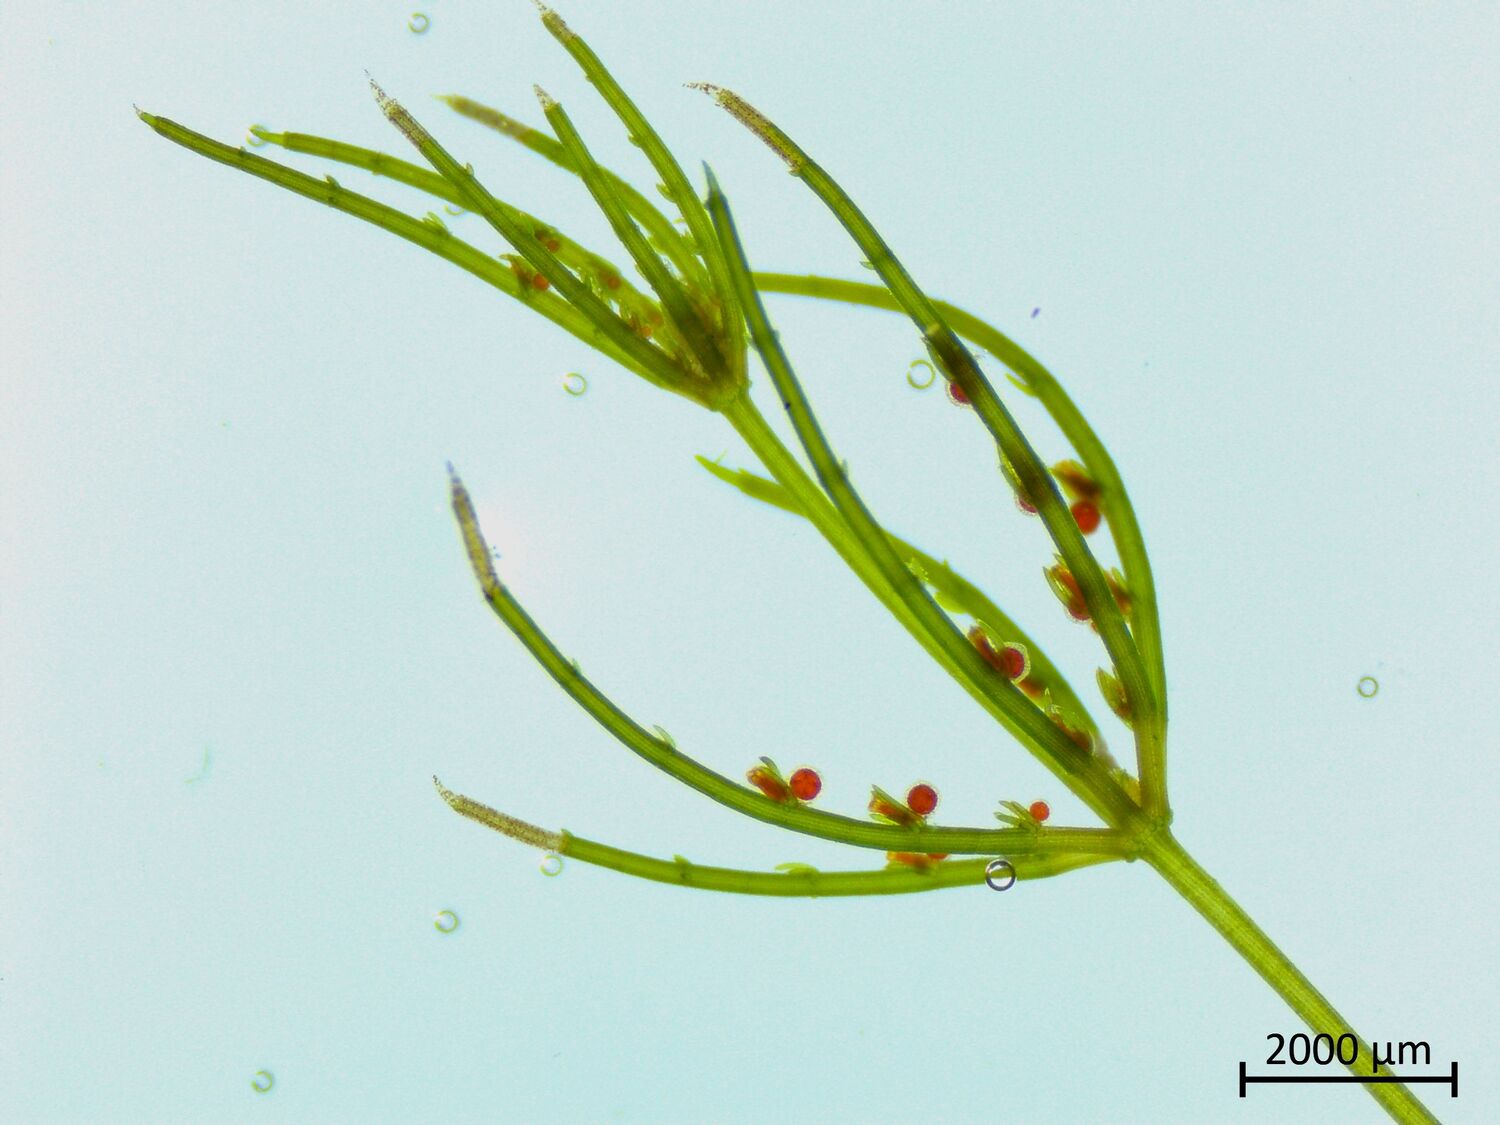 Mikroskopisches Bild der Alge Chara sp., einer Armleuchteralge mit einem komplexen Körperbau (20 µm = 2 mm)